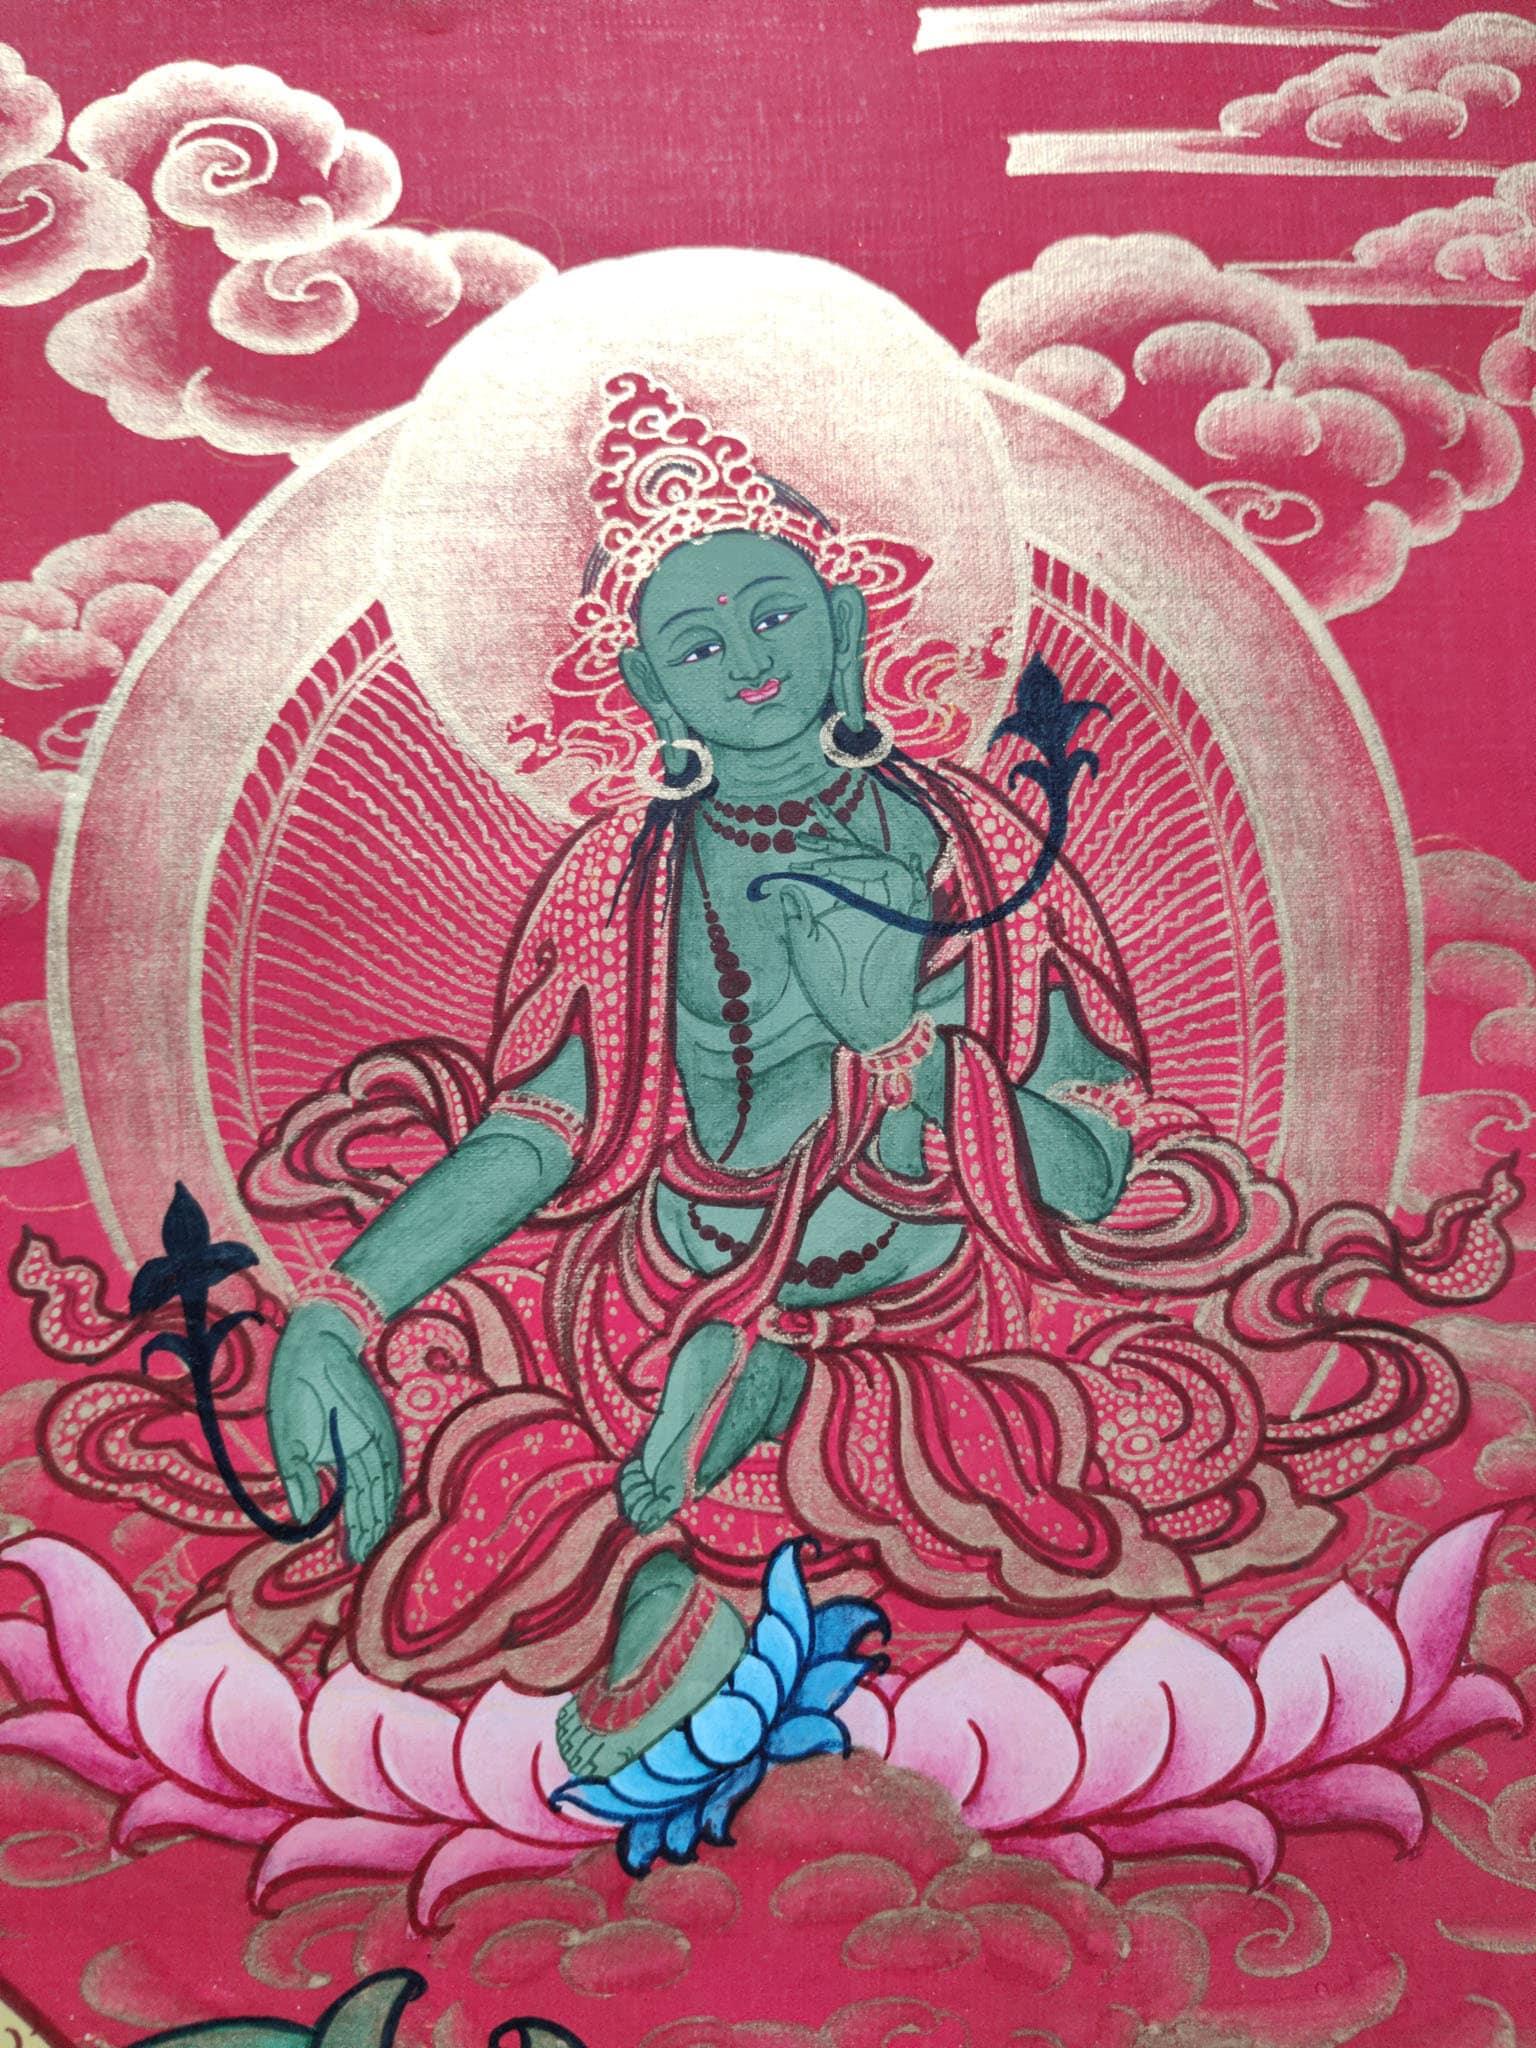 Shakyamuni Buddha Nepalese Art